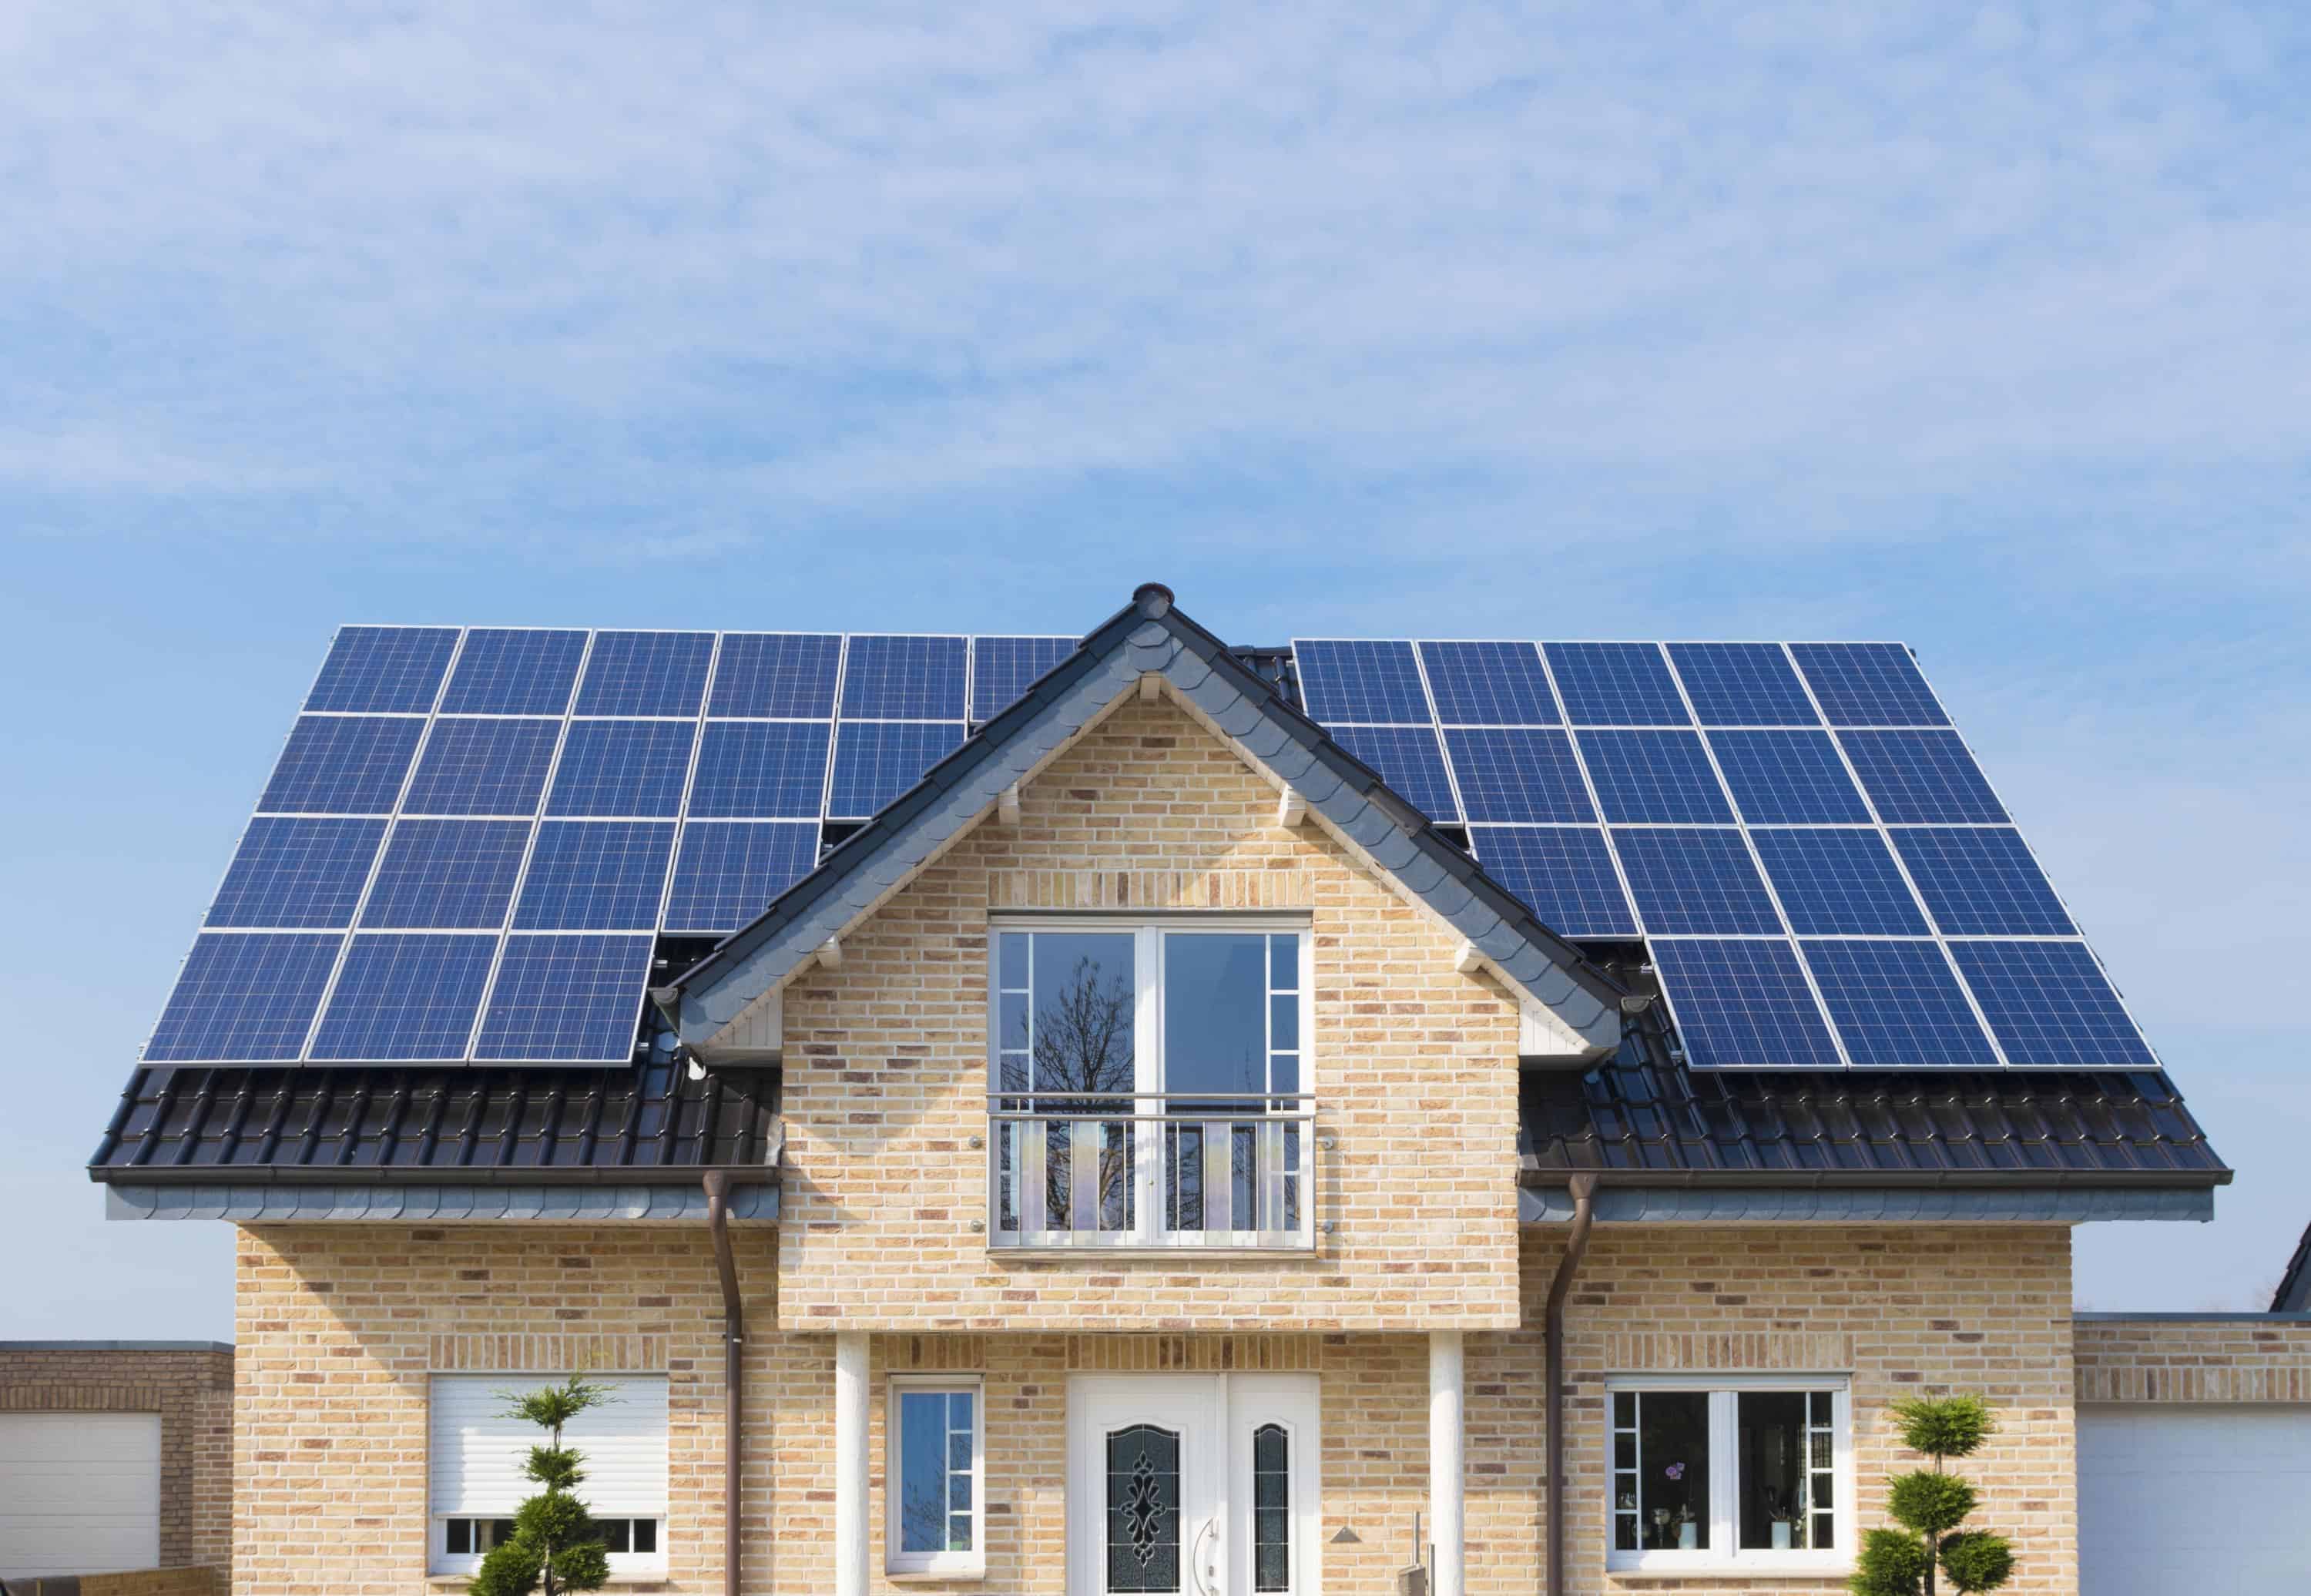 Специально для таких высотных солнечных электростанций австрийская компания Kioto Solar разработала уникальную практически квадратную солнечную батарею весом 19 кг и площадью почти 1 кв.м